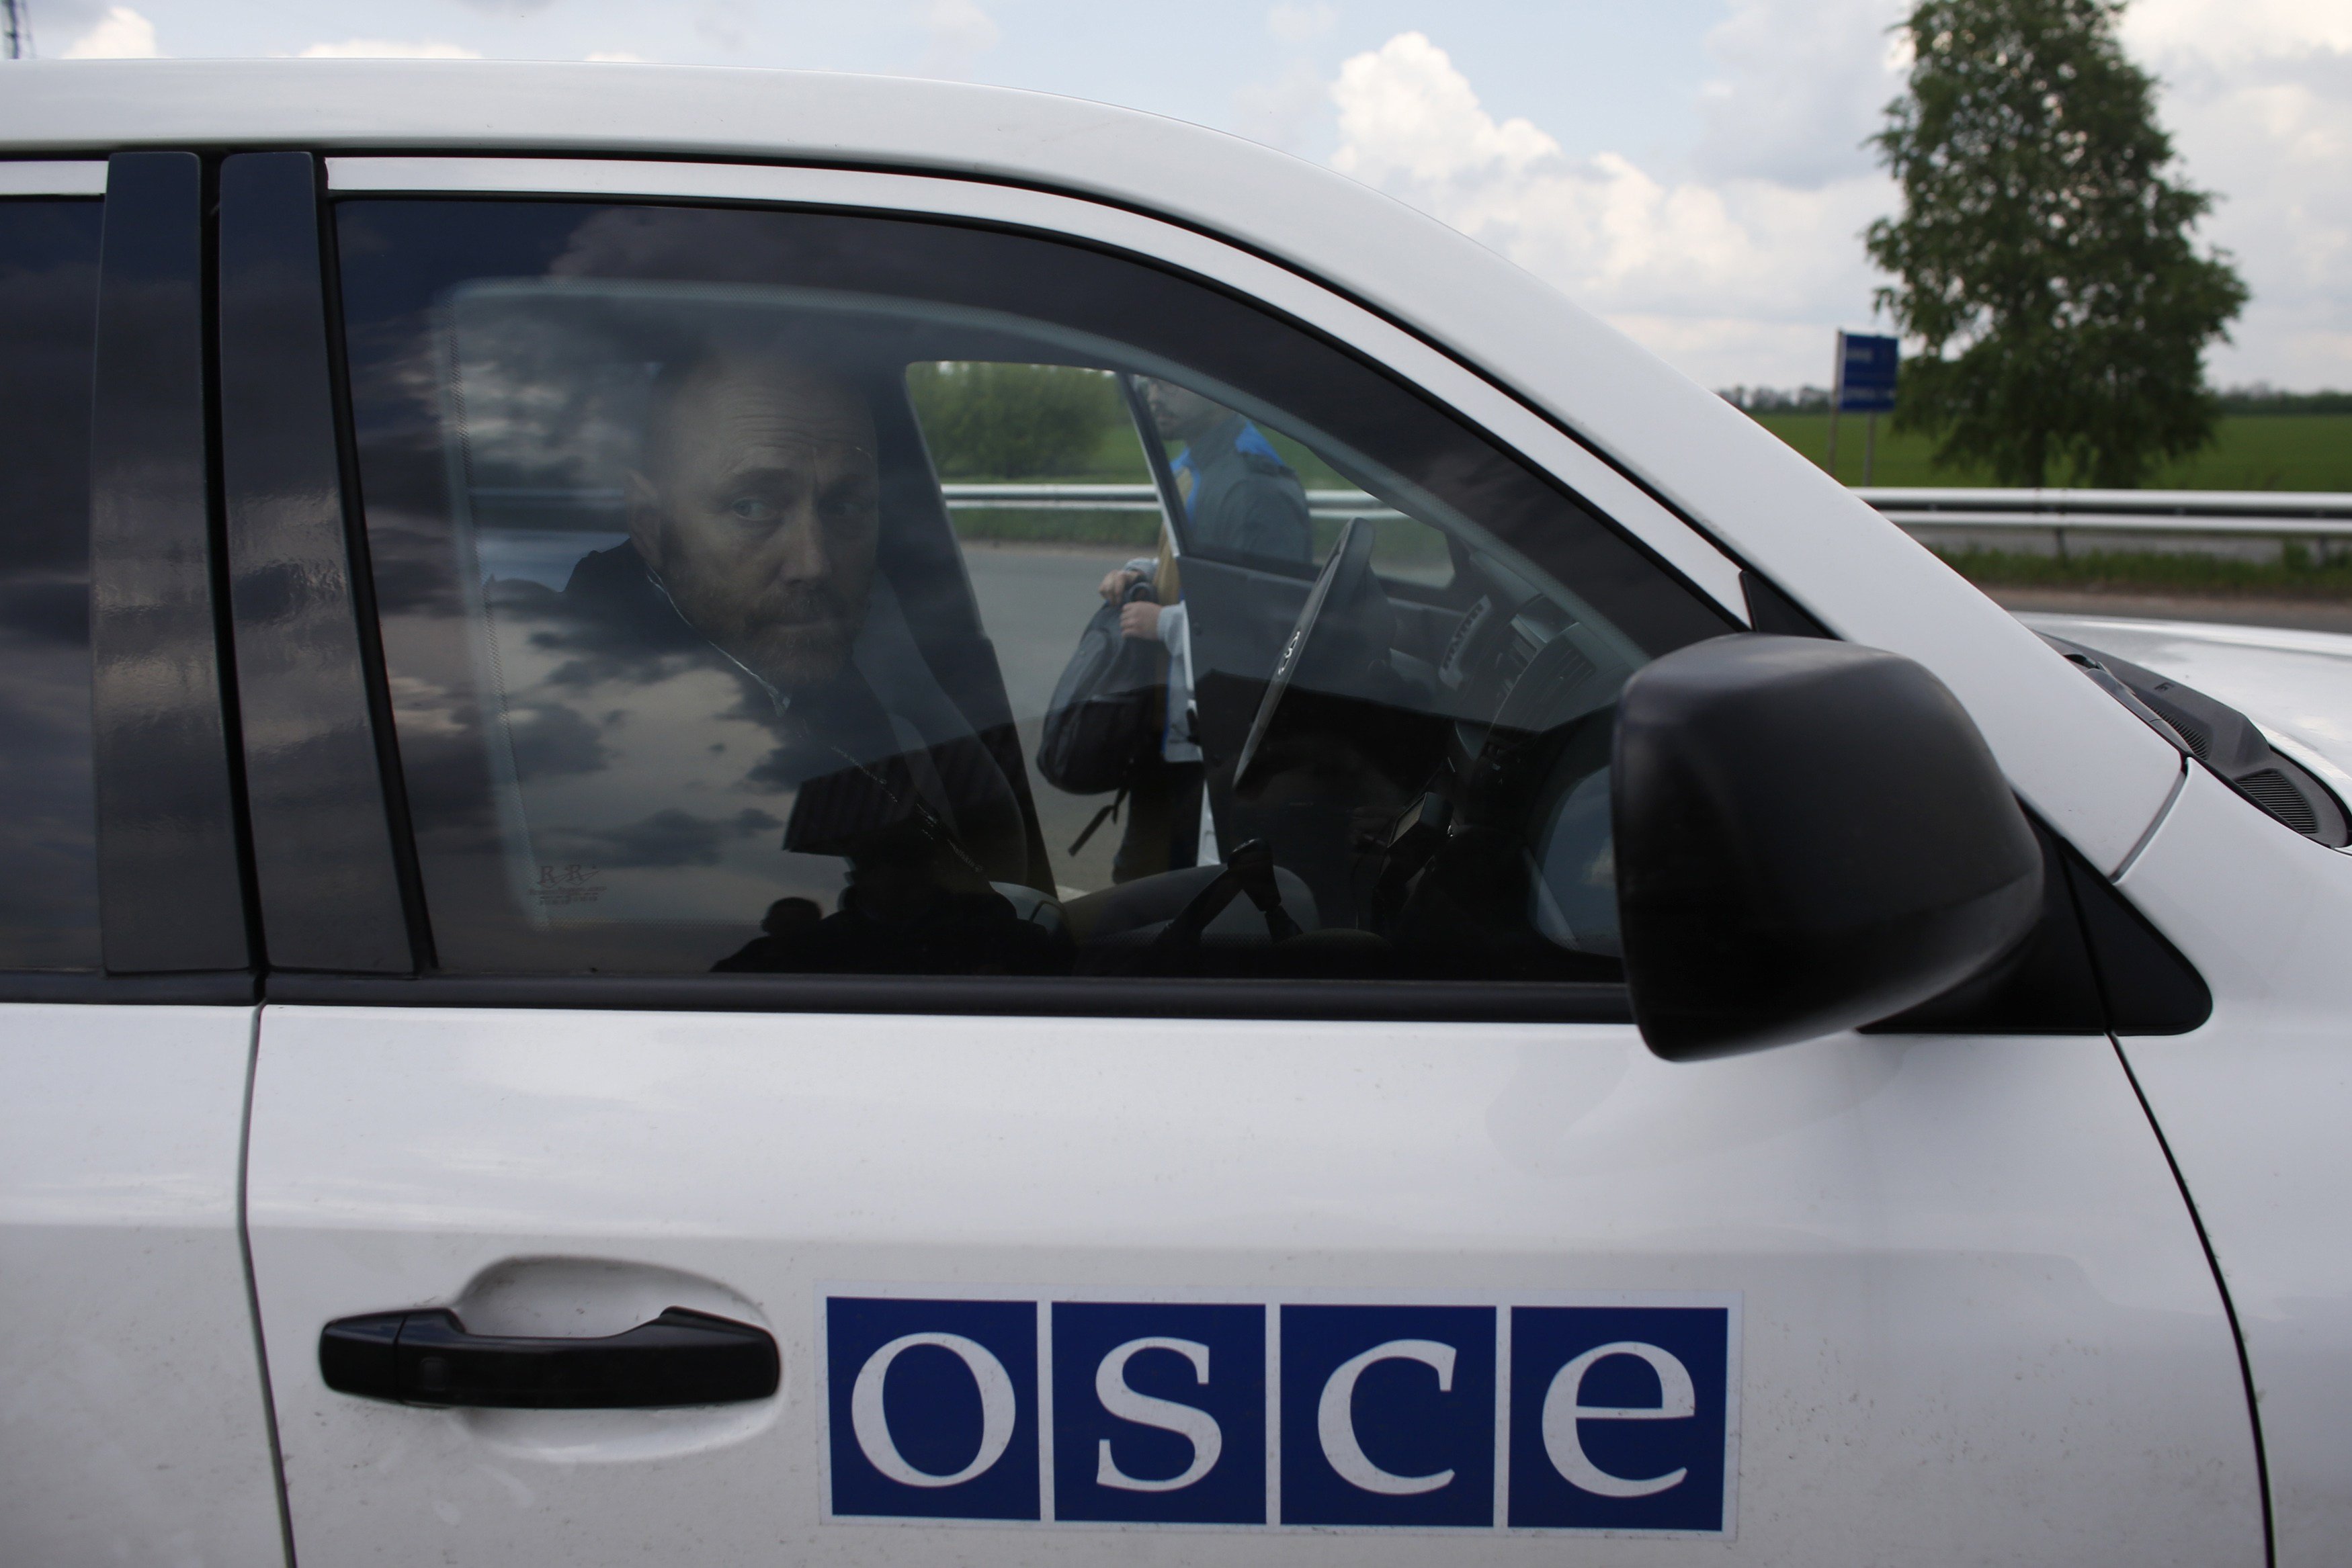 Минобороны: 80% миссии ОБСЕ - россияне, которые передают в РФ сведения о дислокации сил АТО